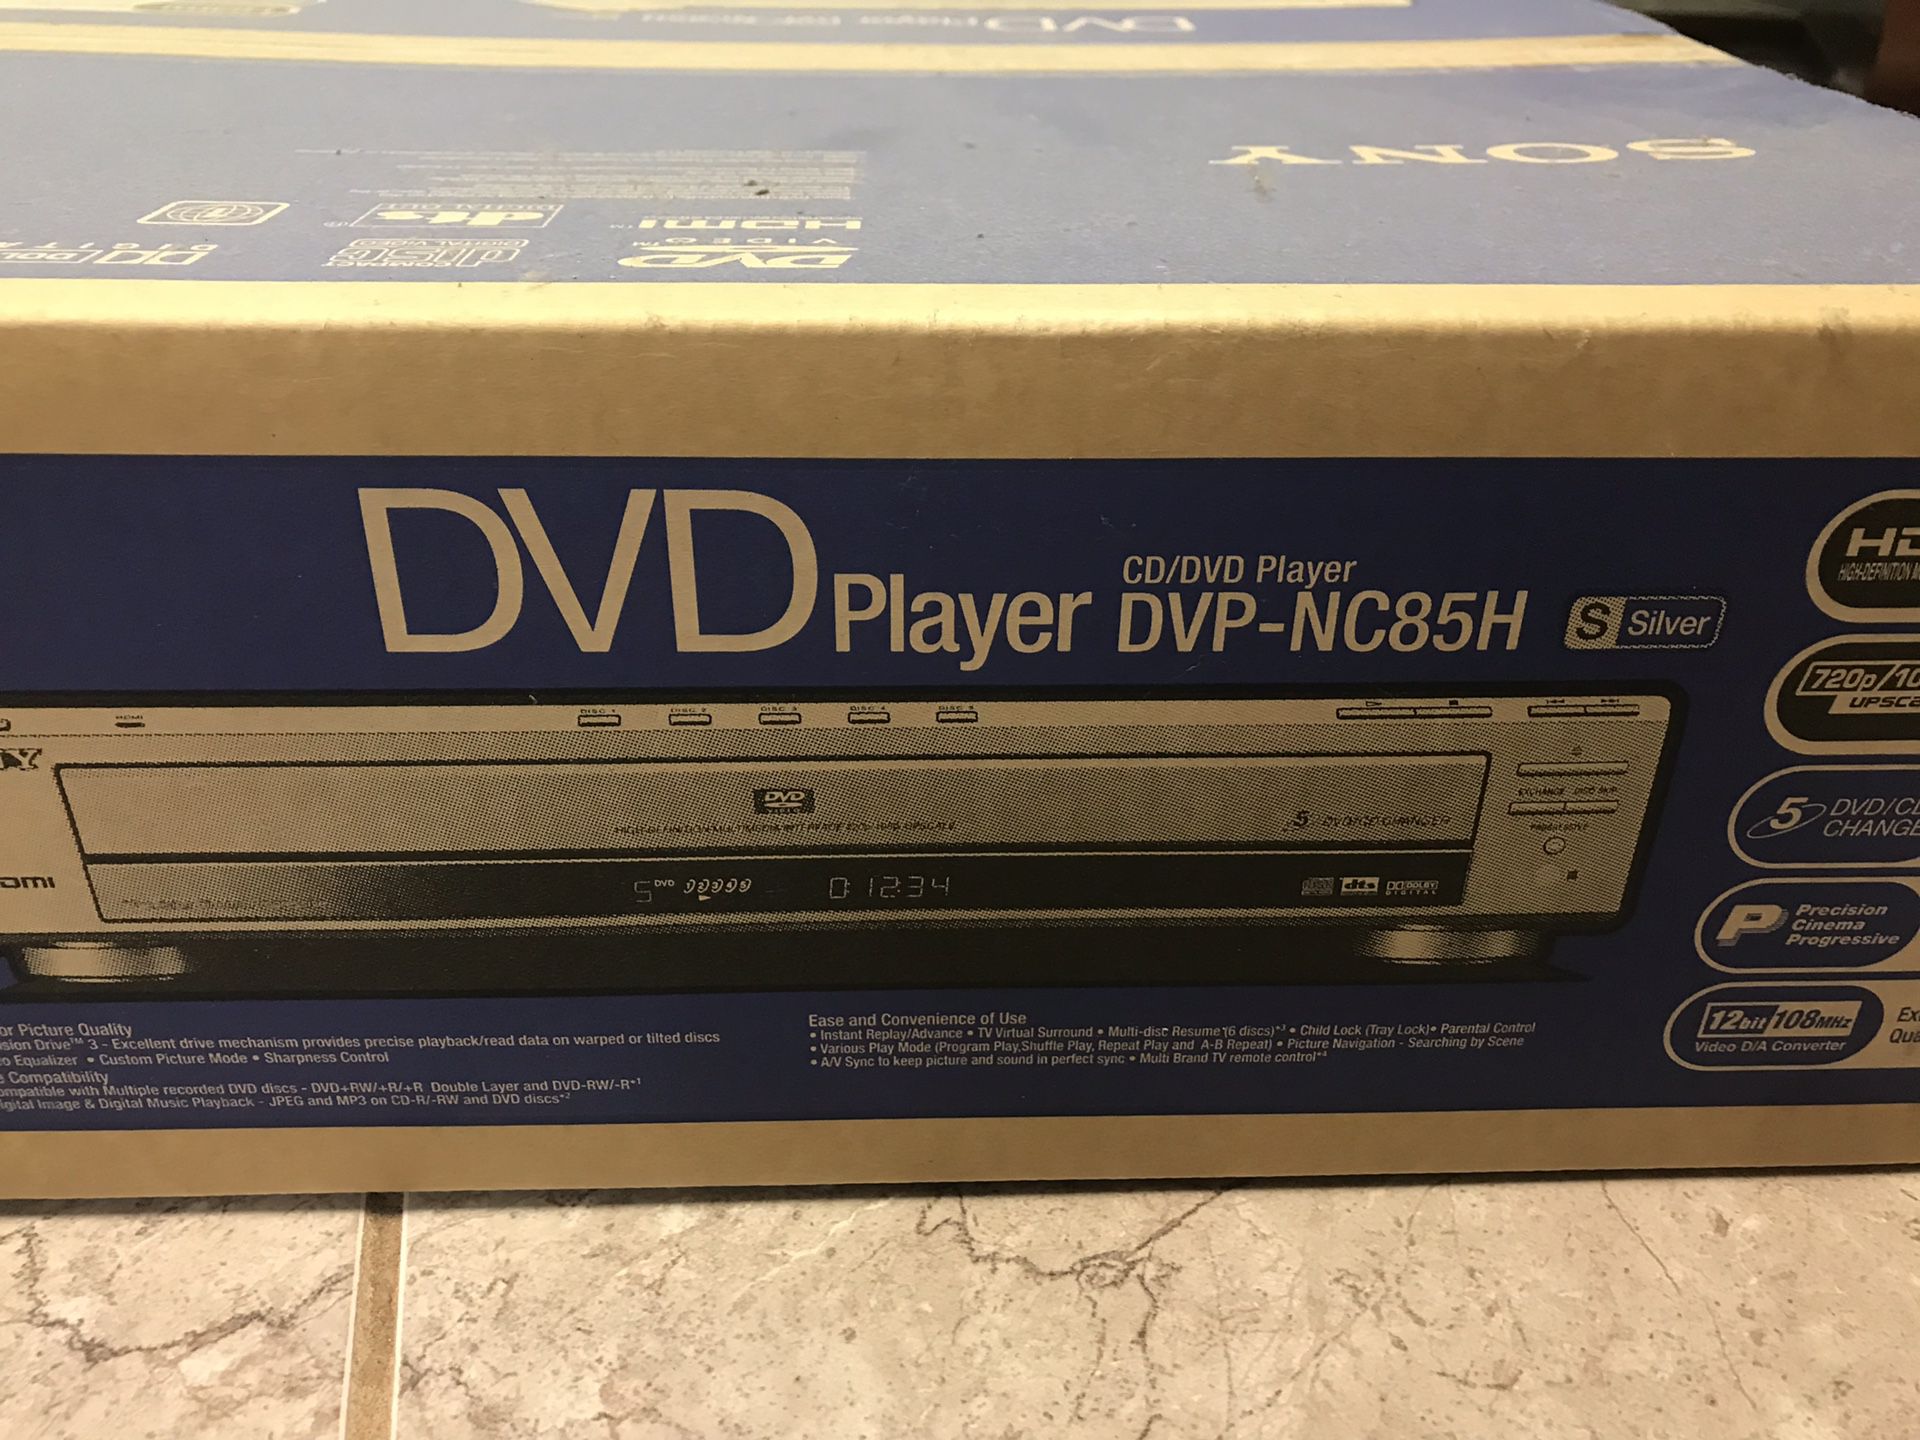 Brand new CD/ DVD player